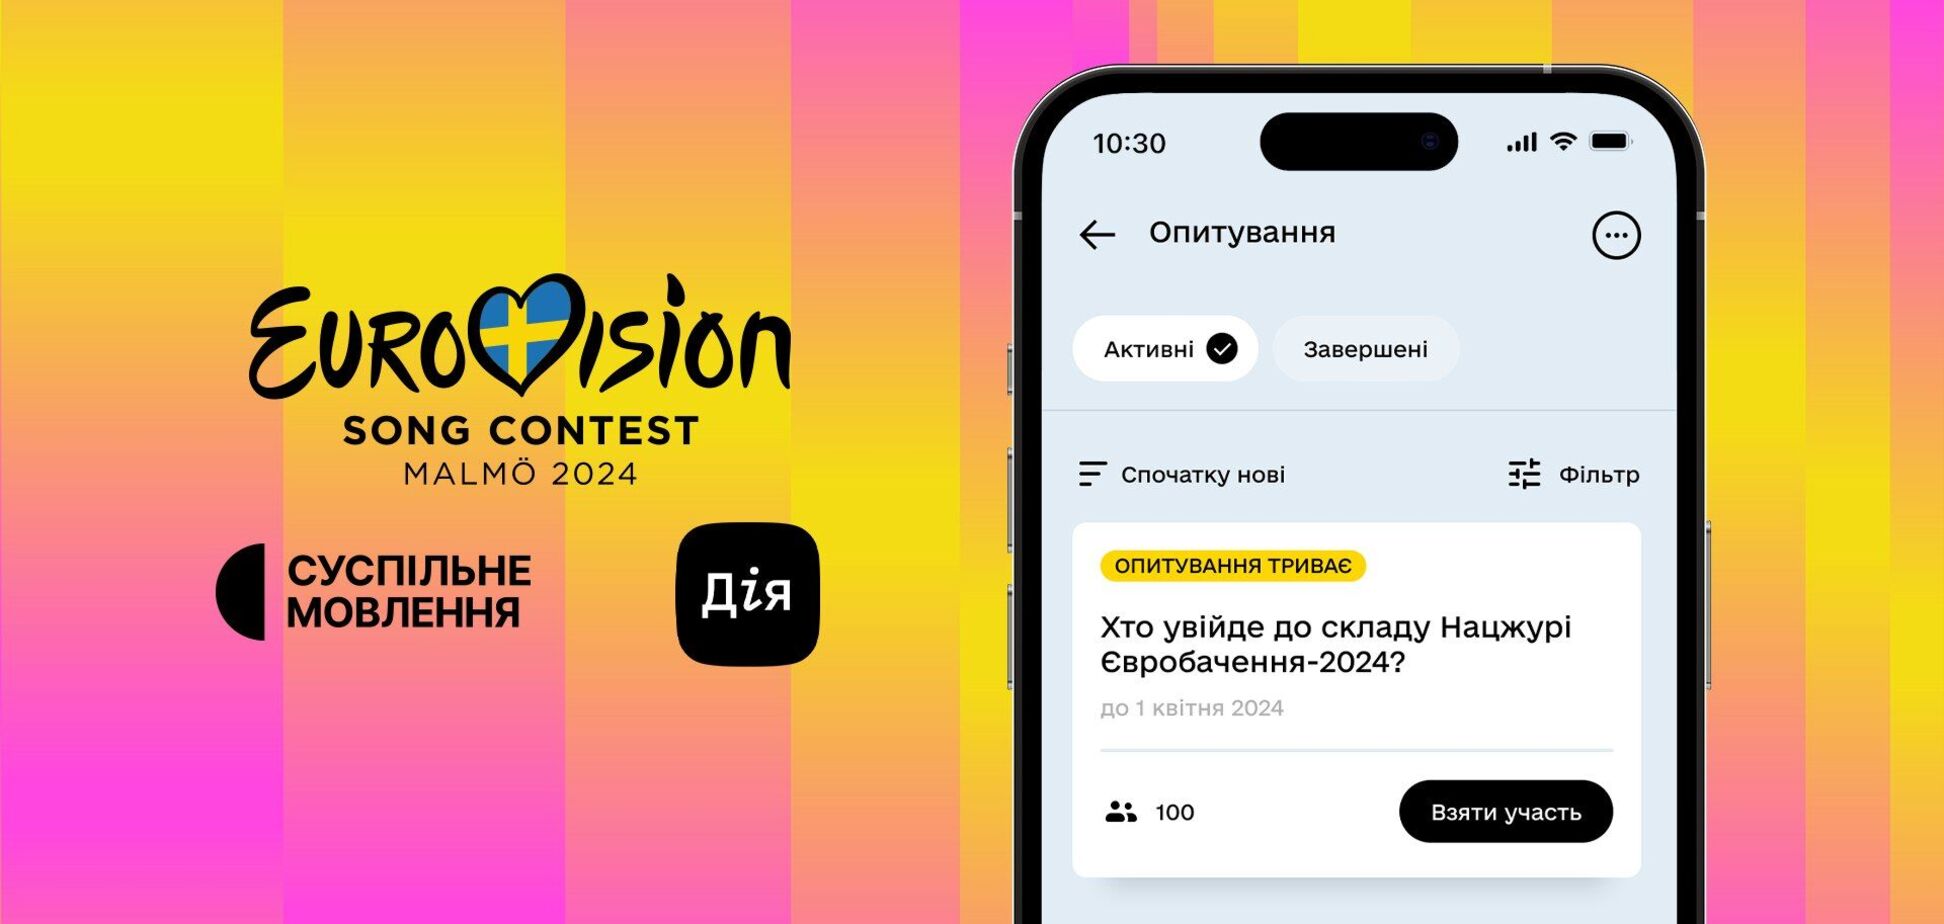 Українці зможуть обрати склад Національного журі на Євробачення 2024. Як проголосувати в Дії